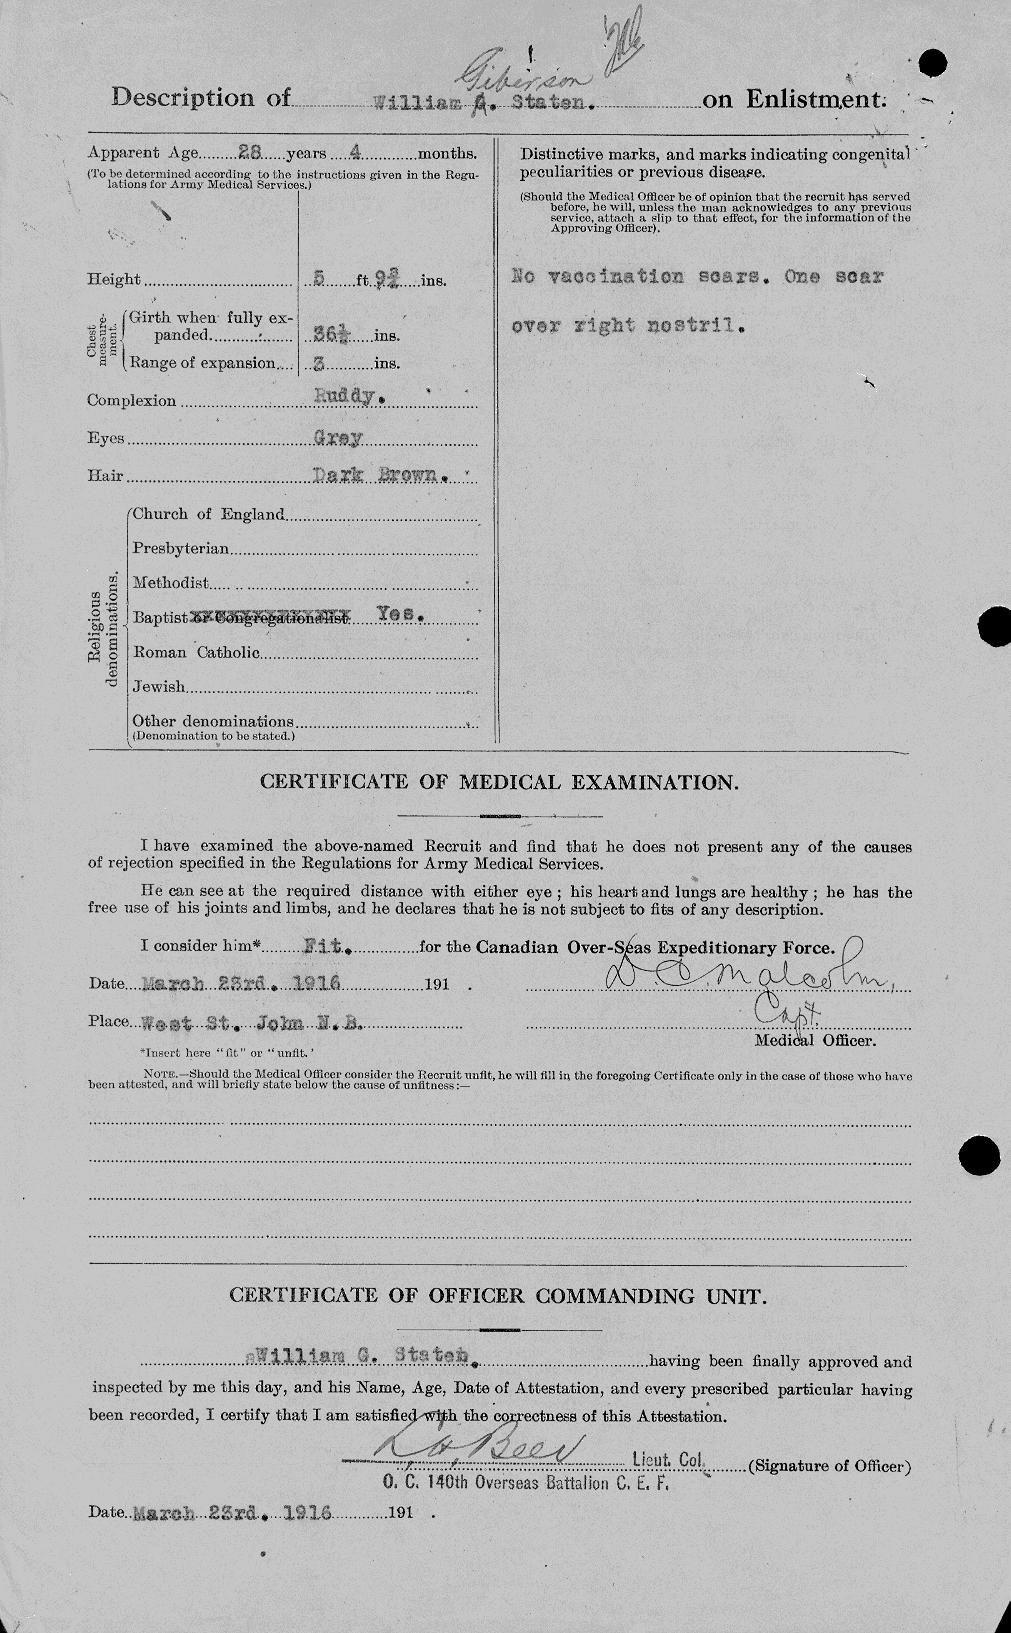 Dossiers du Personnel de la Première Guerre mondiale - CEC 116130b